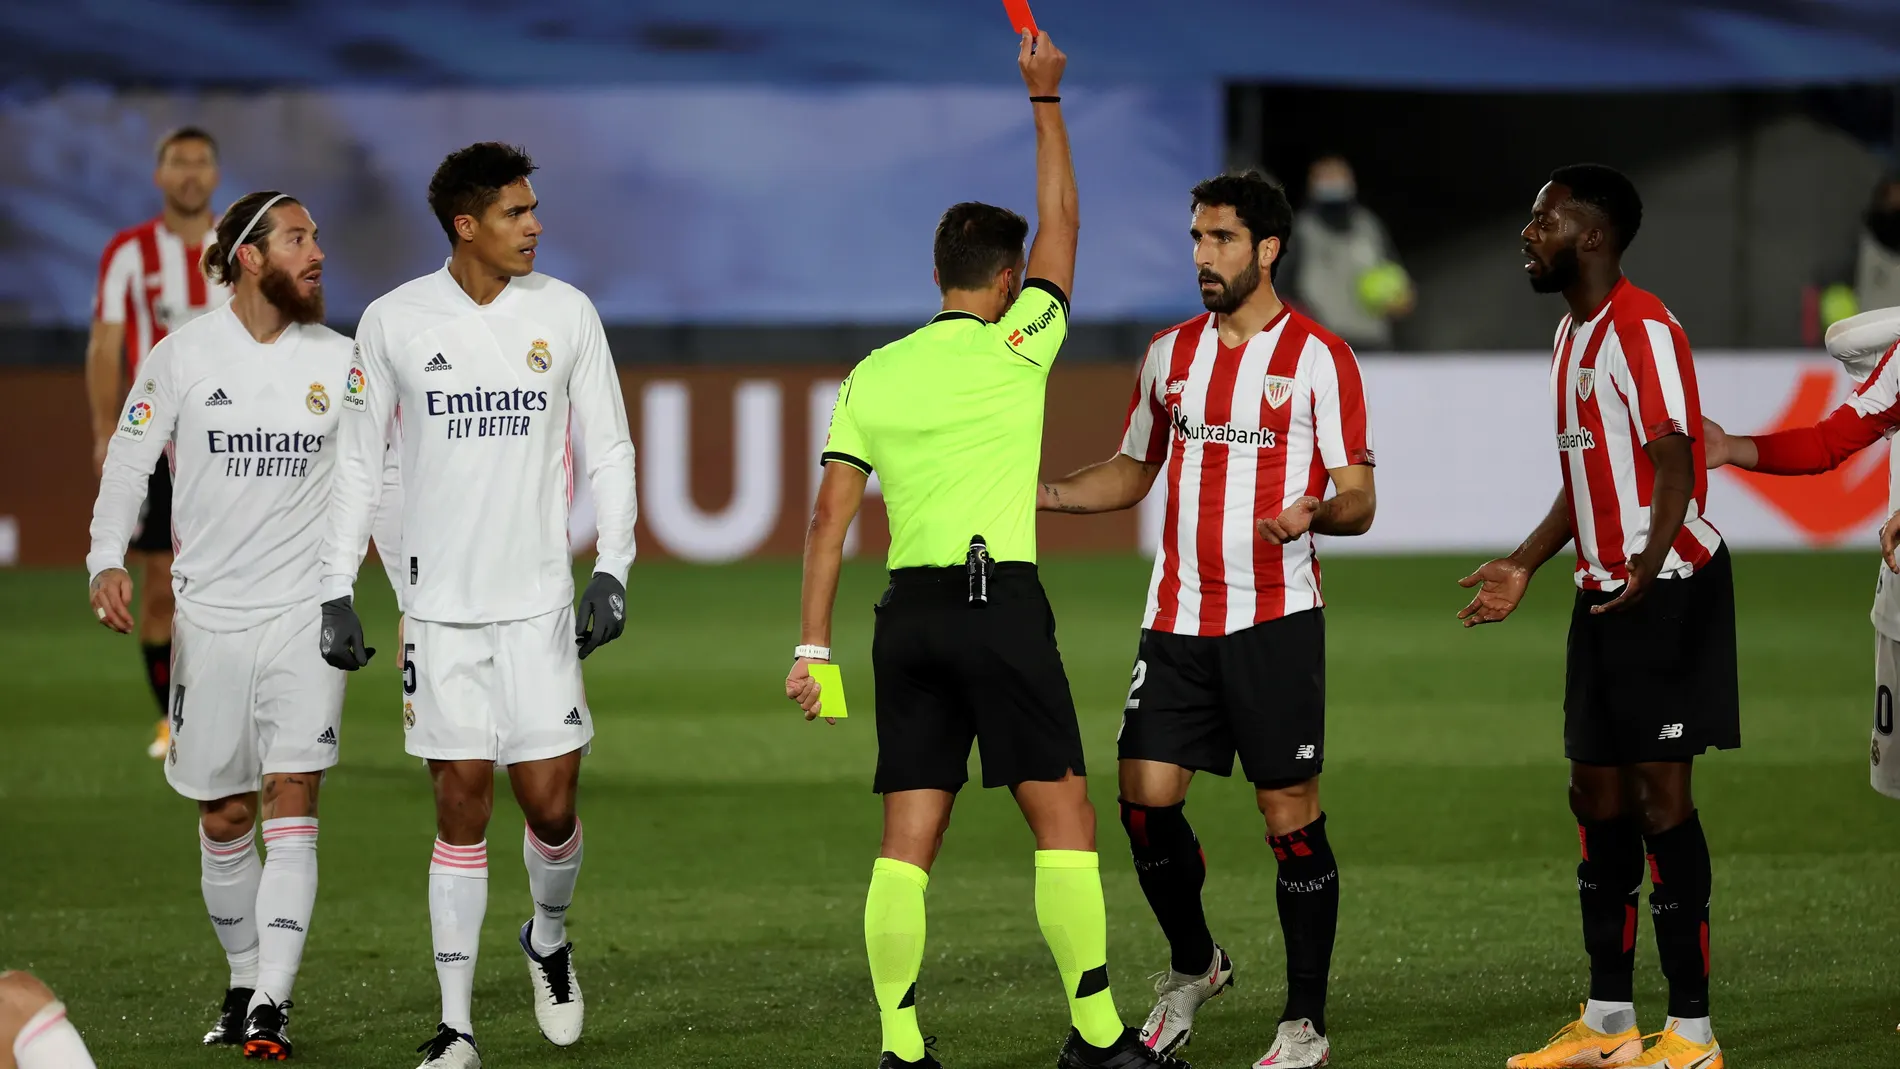 La tarjeta roja a Raúl García dejó al Athletic con un jugador menos a los 13 minutos